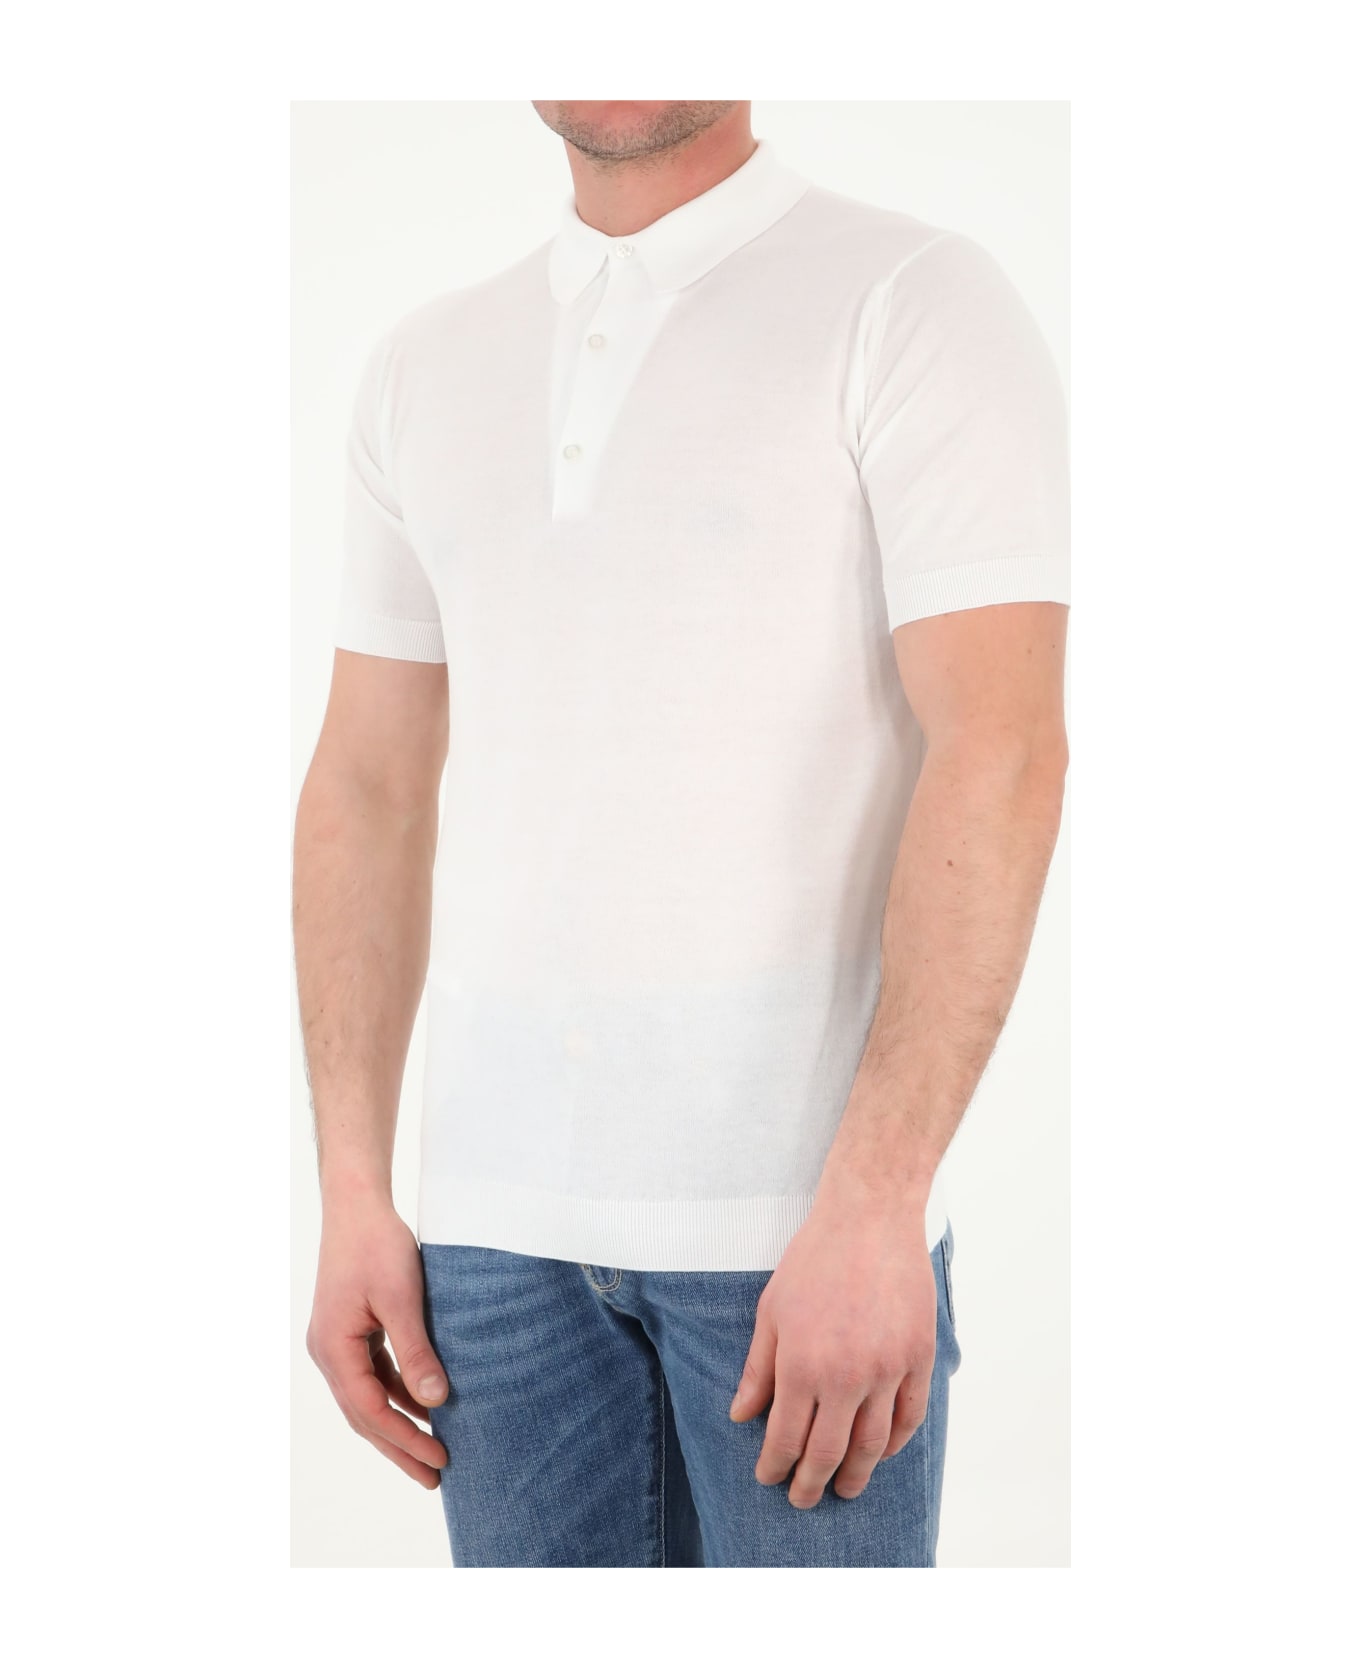 John Smedley Adrian Polo Shirt - WHITE